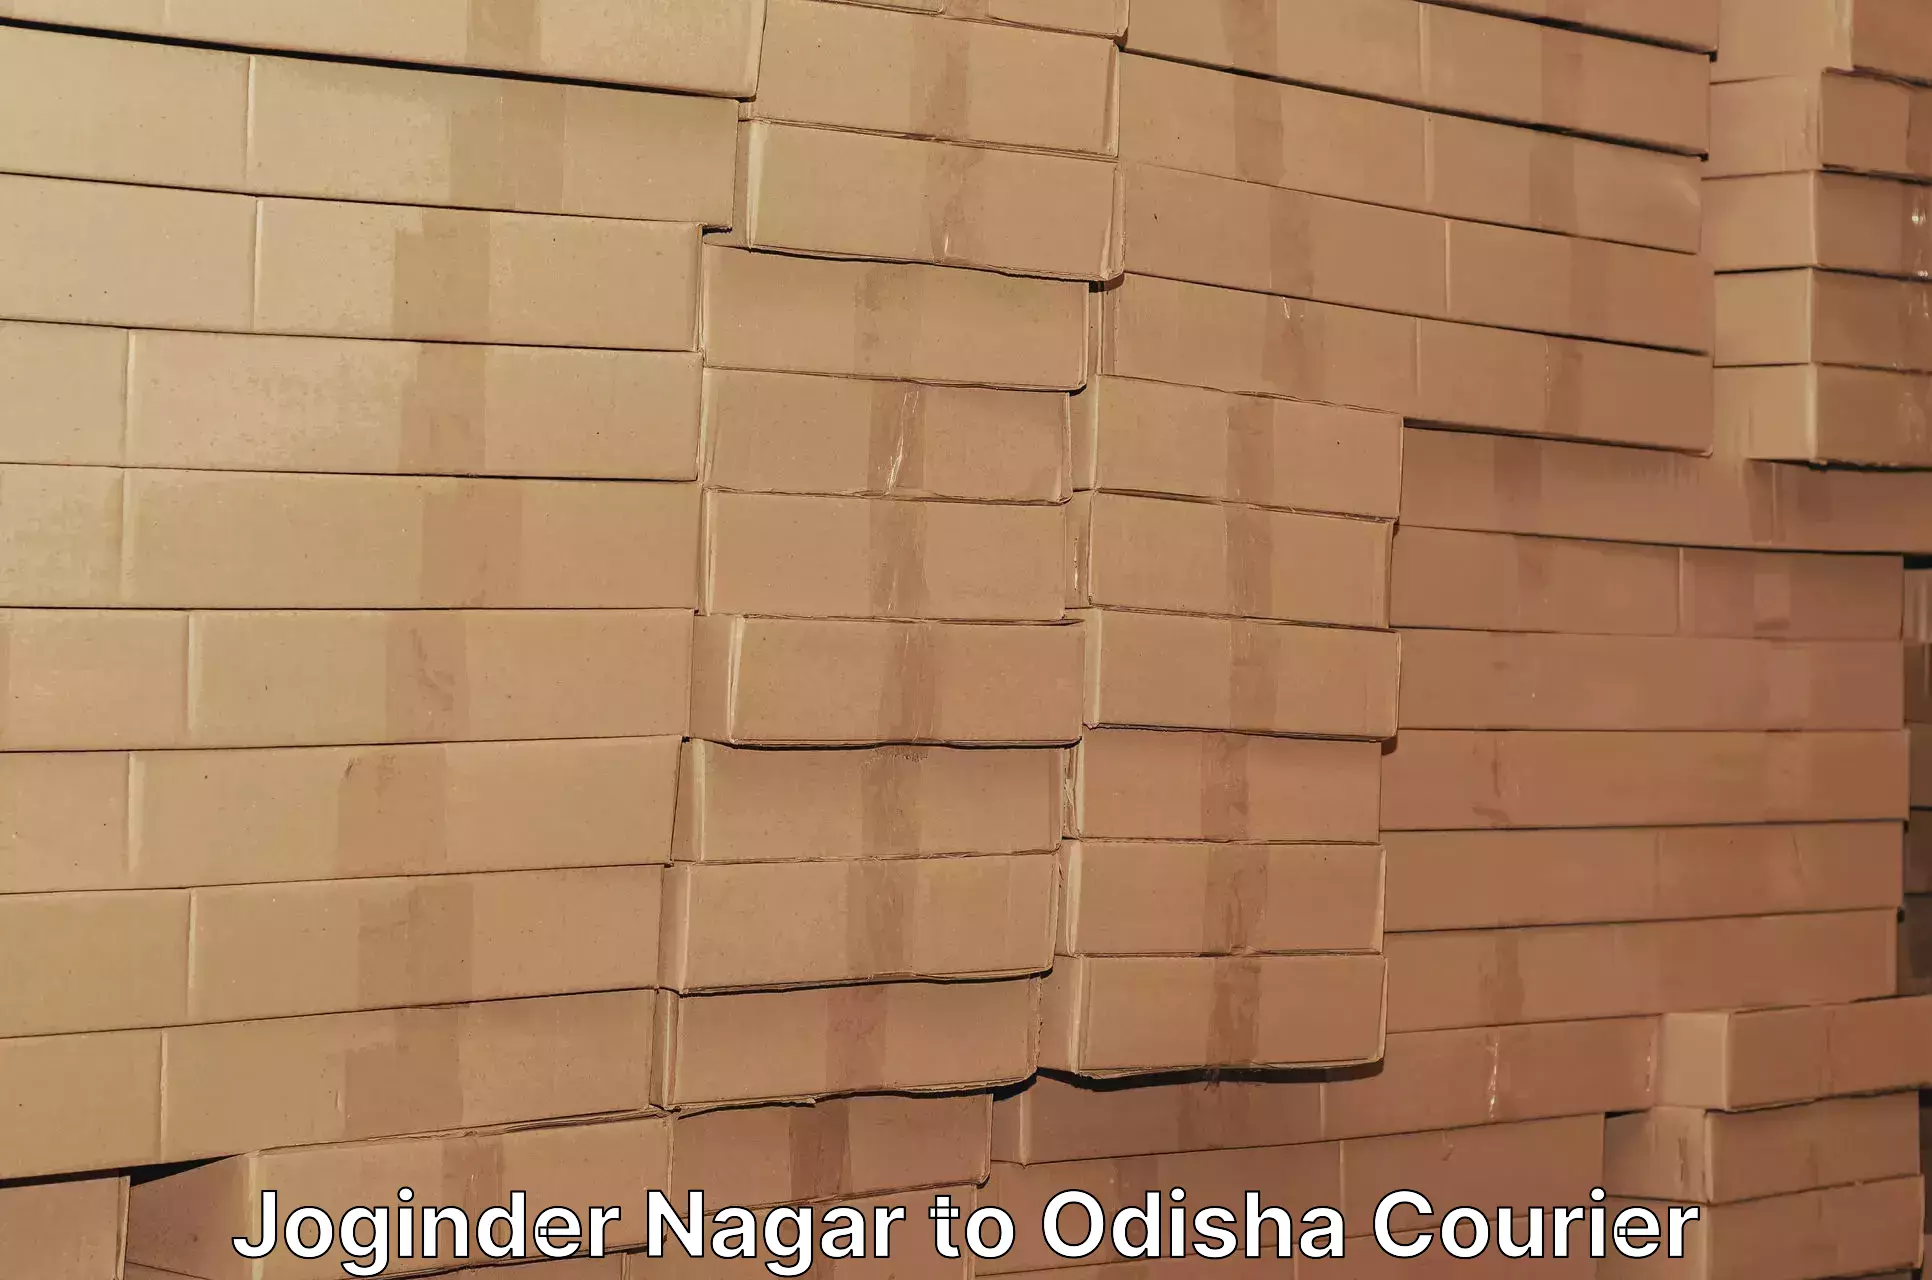 Digital courier platforms in Joginder Nagar to Udala